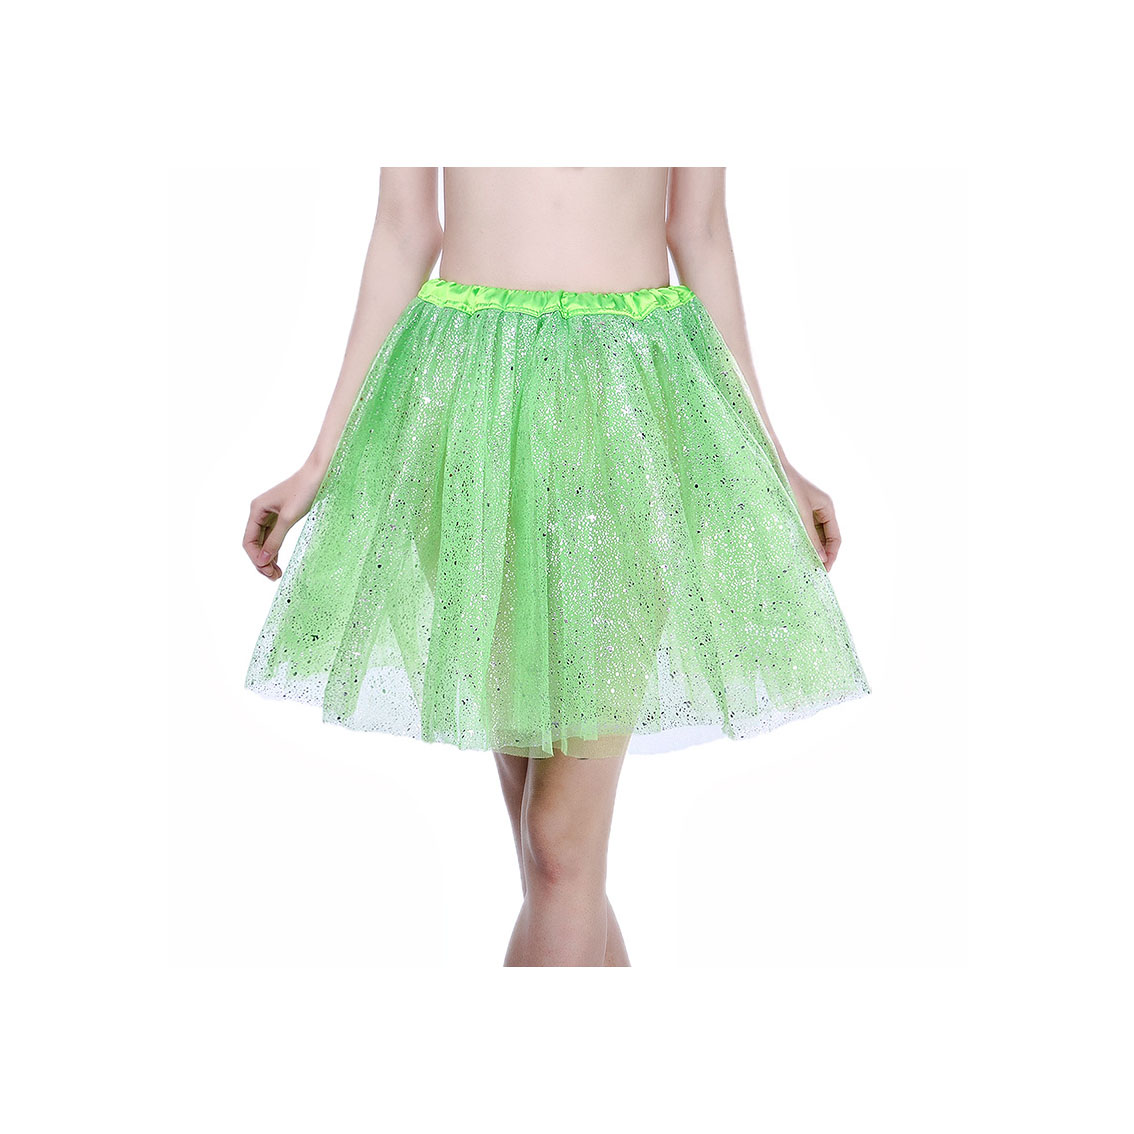 Adult Tutu Skirt Sequin Gilding Polka Dot 3 Layers Party Dance Ballet Pettiskirt Tulle Girl Mini Skirt Lime Green